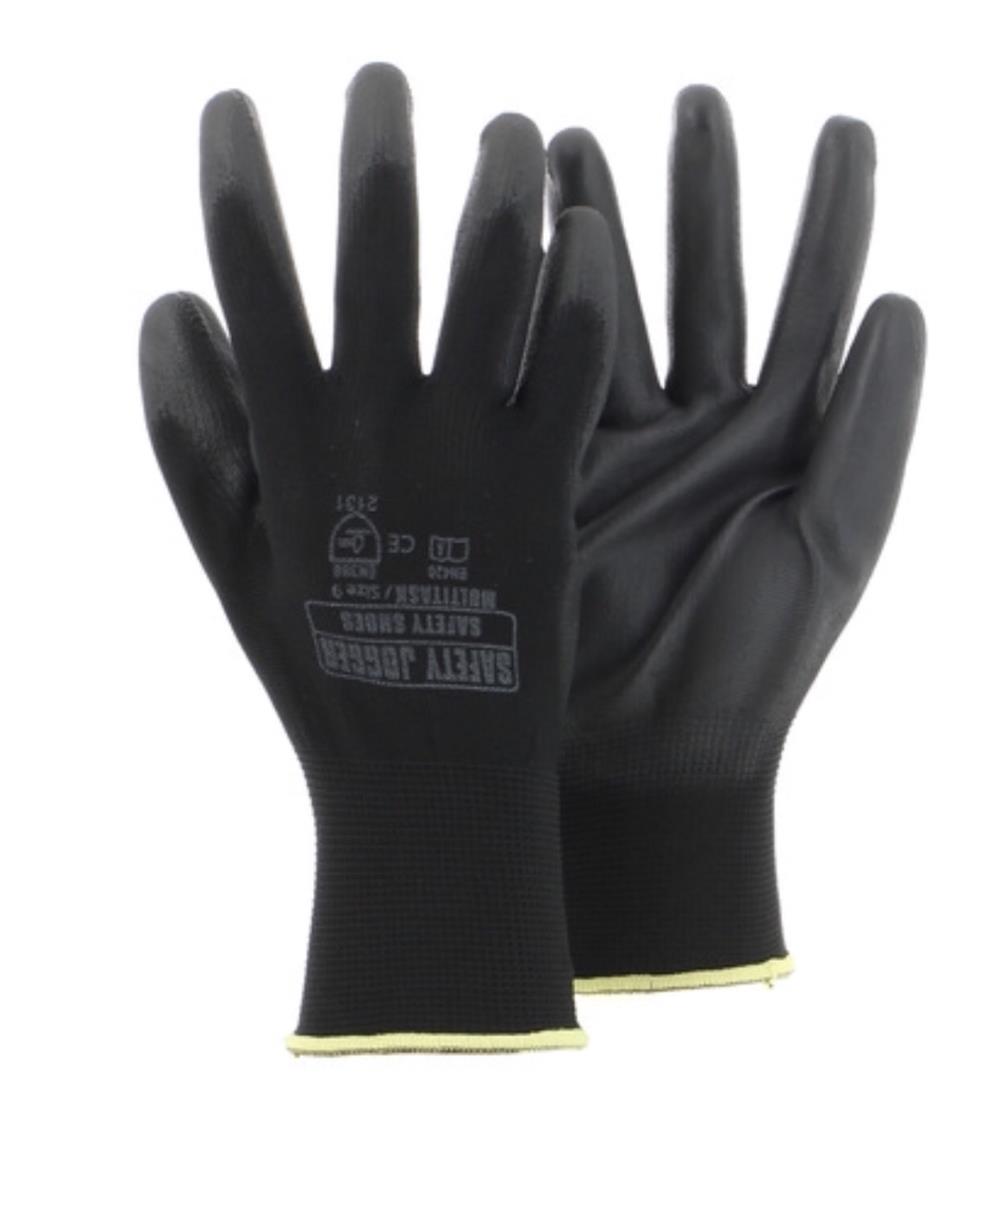 นำเข้า-ถุงมือผ้าเคลือบ PU,ถุงมือถ้าเคลือบพียู,Safety Jogger,Plant and Facility Equipment/Safety Equipment/Gloves & Hand Protection